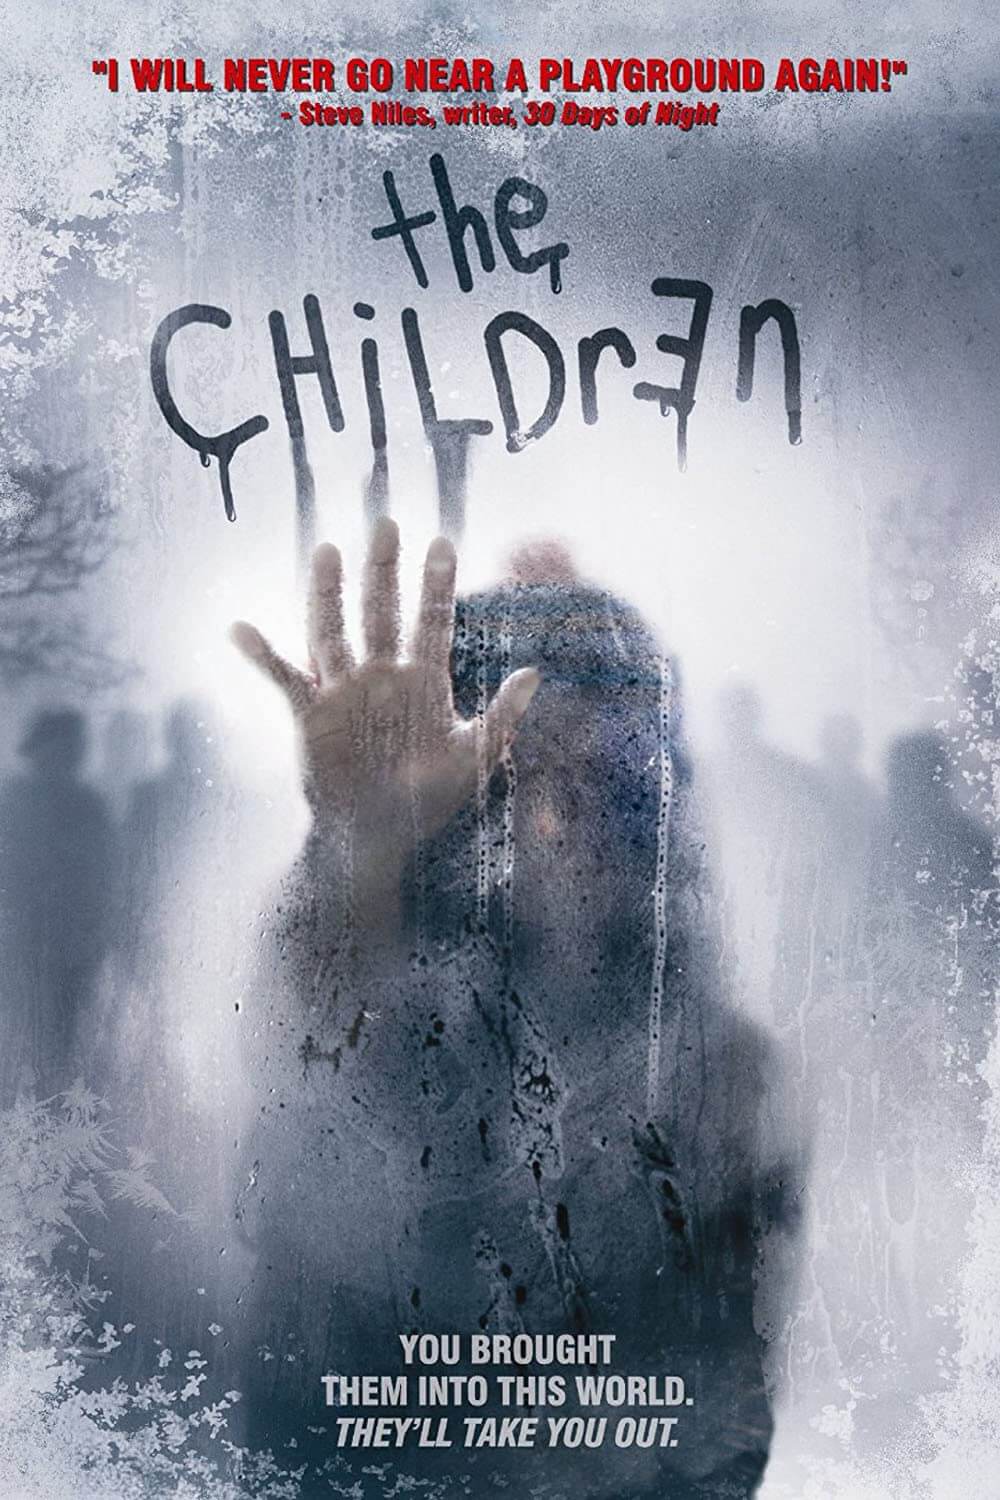 Children (2008)